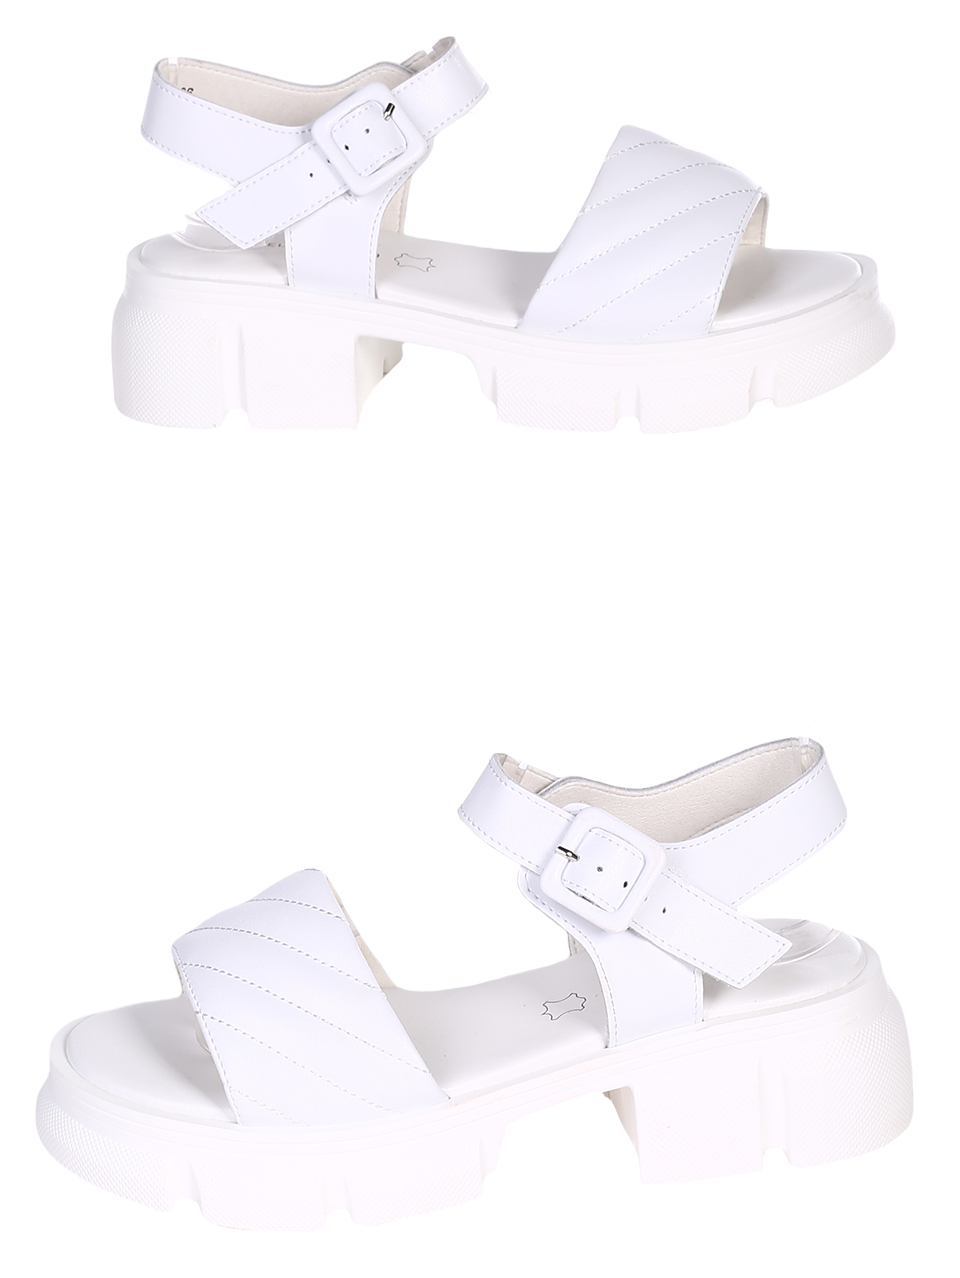 Ежедневни дамски сандали от естествена кожа в бяло 4AF-23200 white